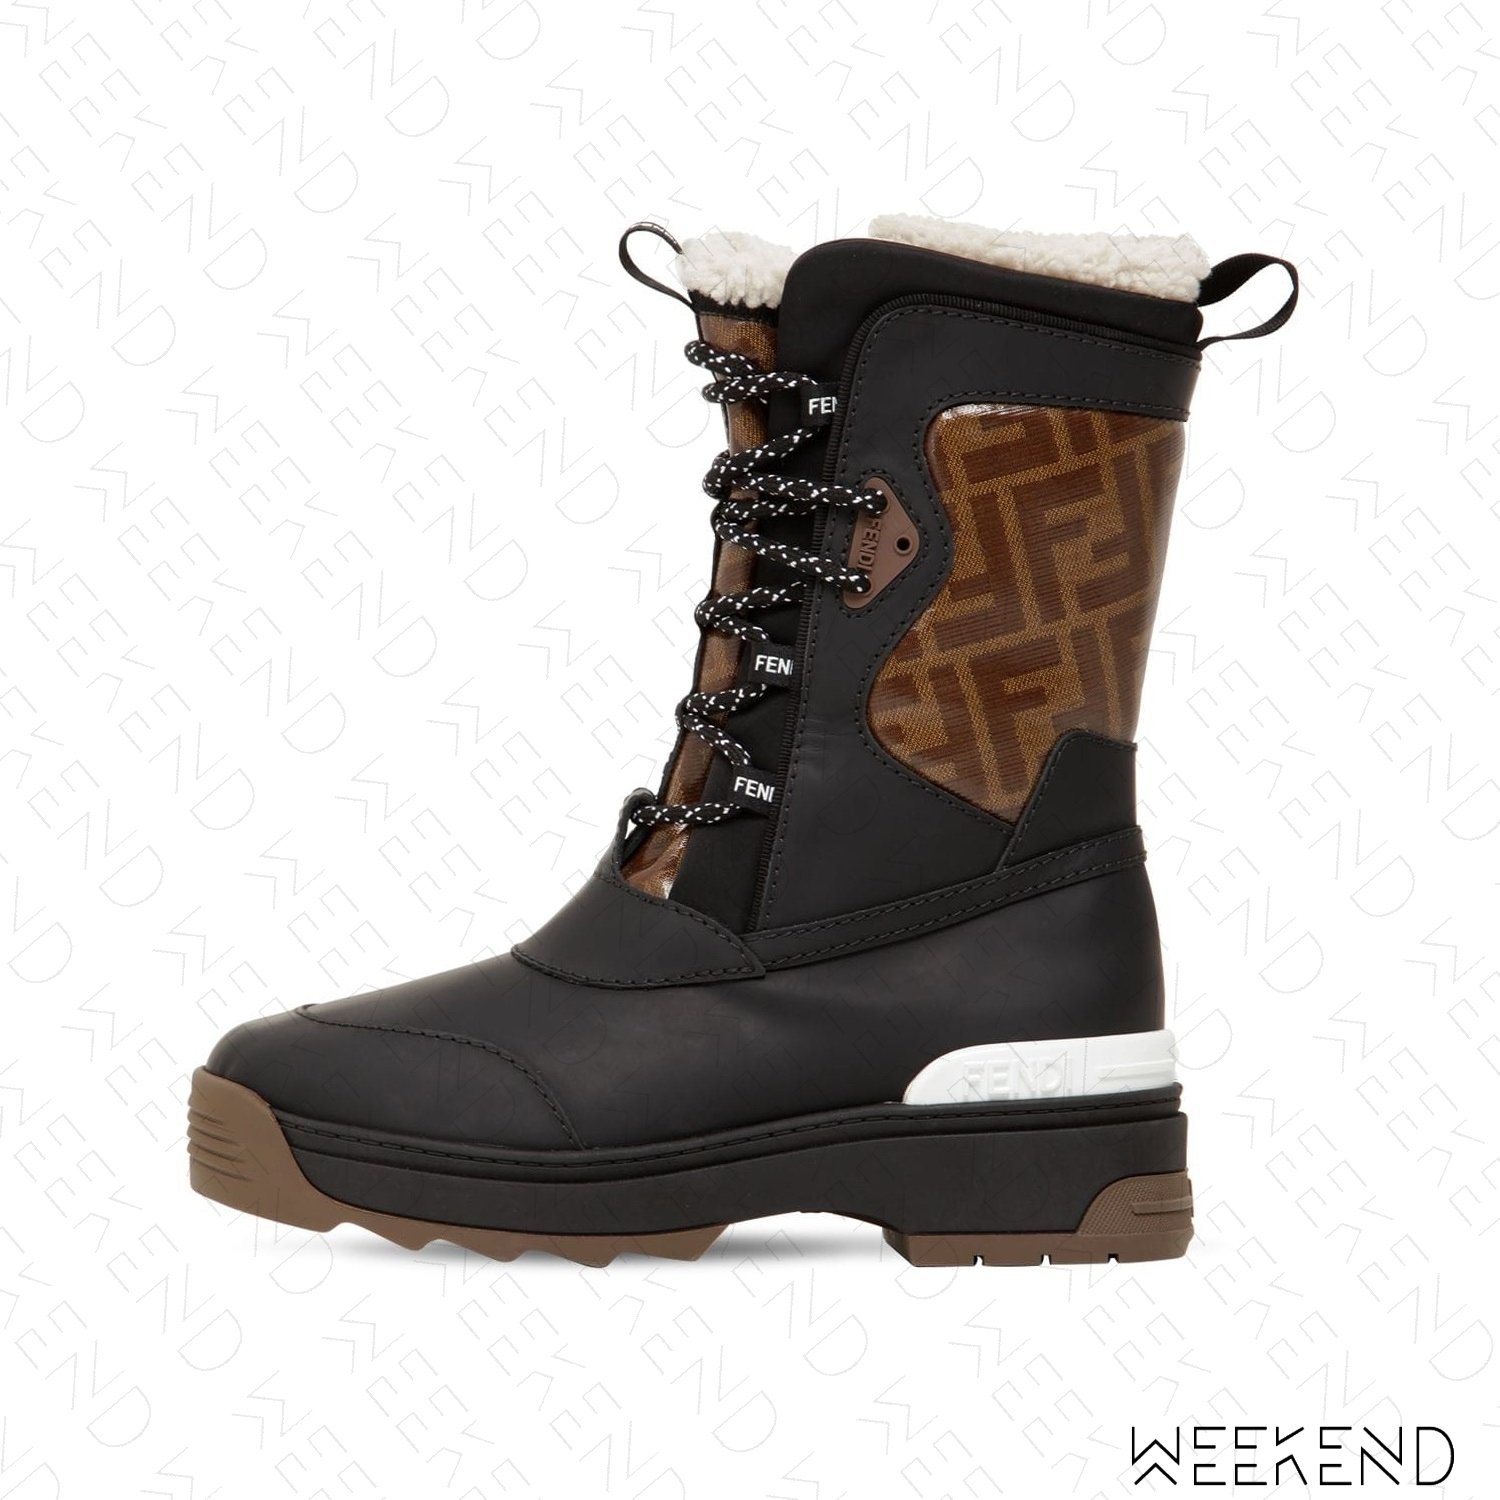 WEEKEND】 FENDI Logo FF 橡膠皮革短靴靴子雪靴黑+棕色19春夏| Yahoo